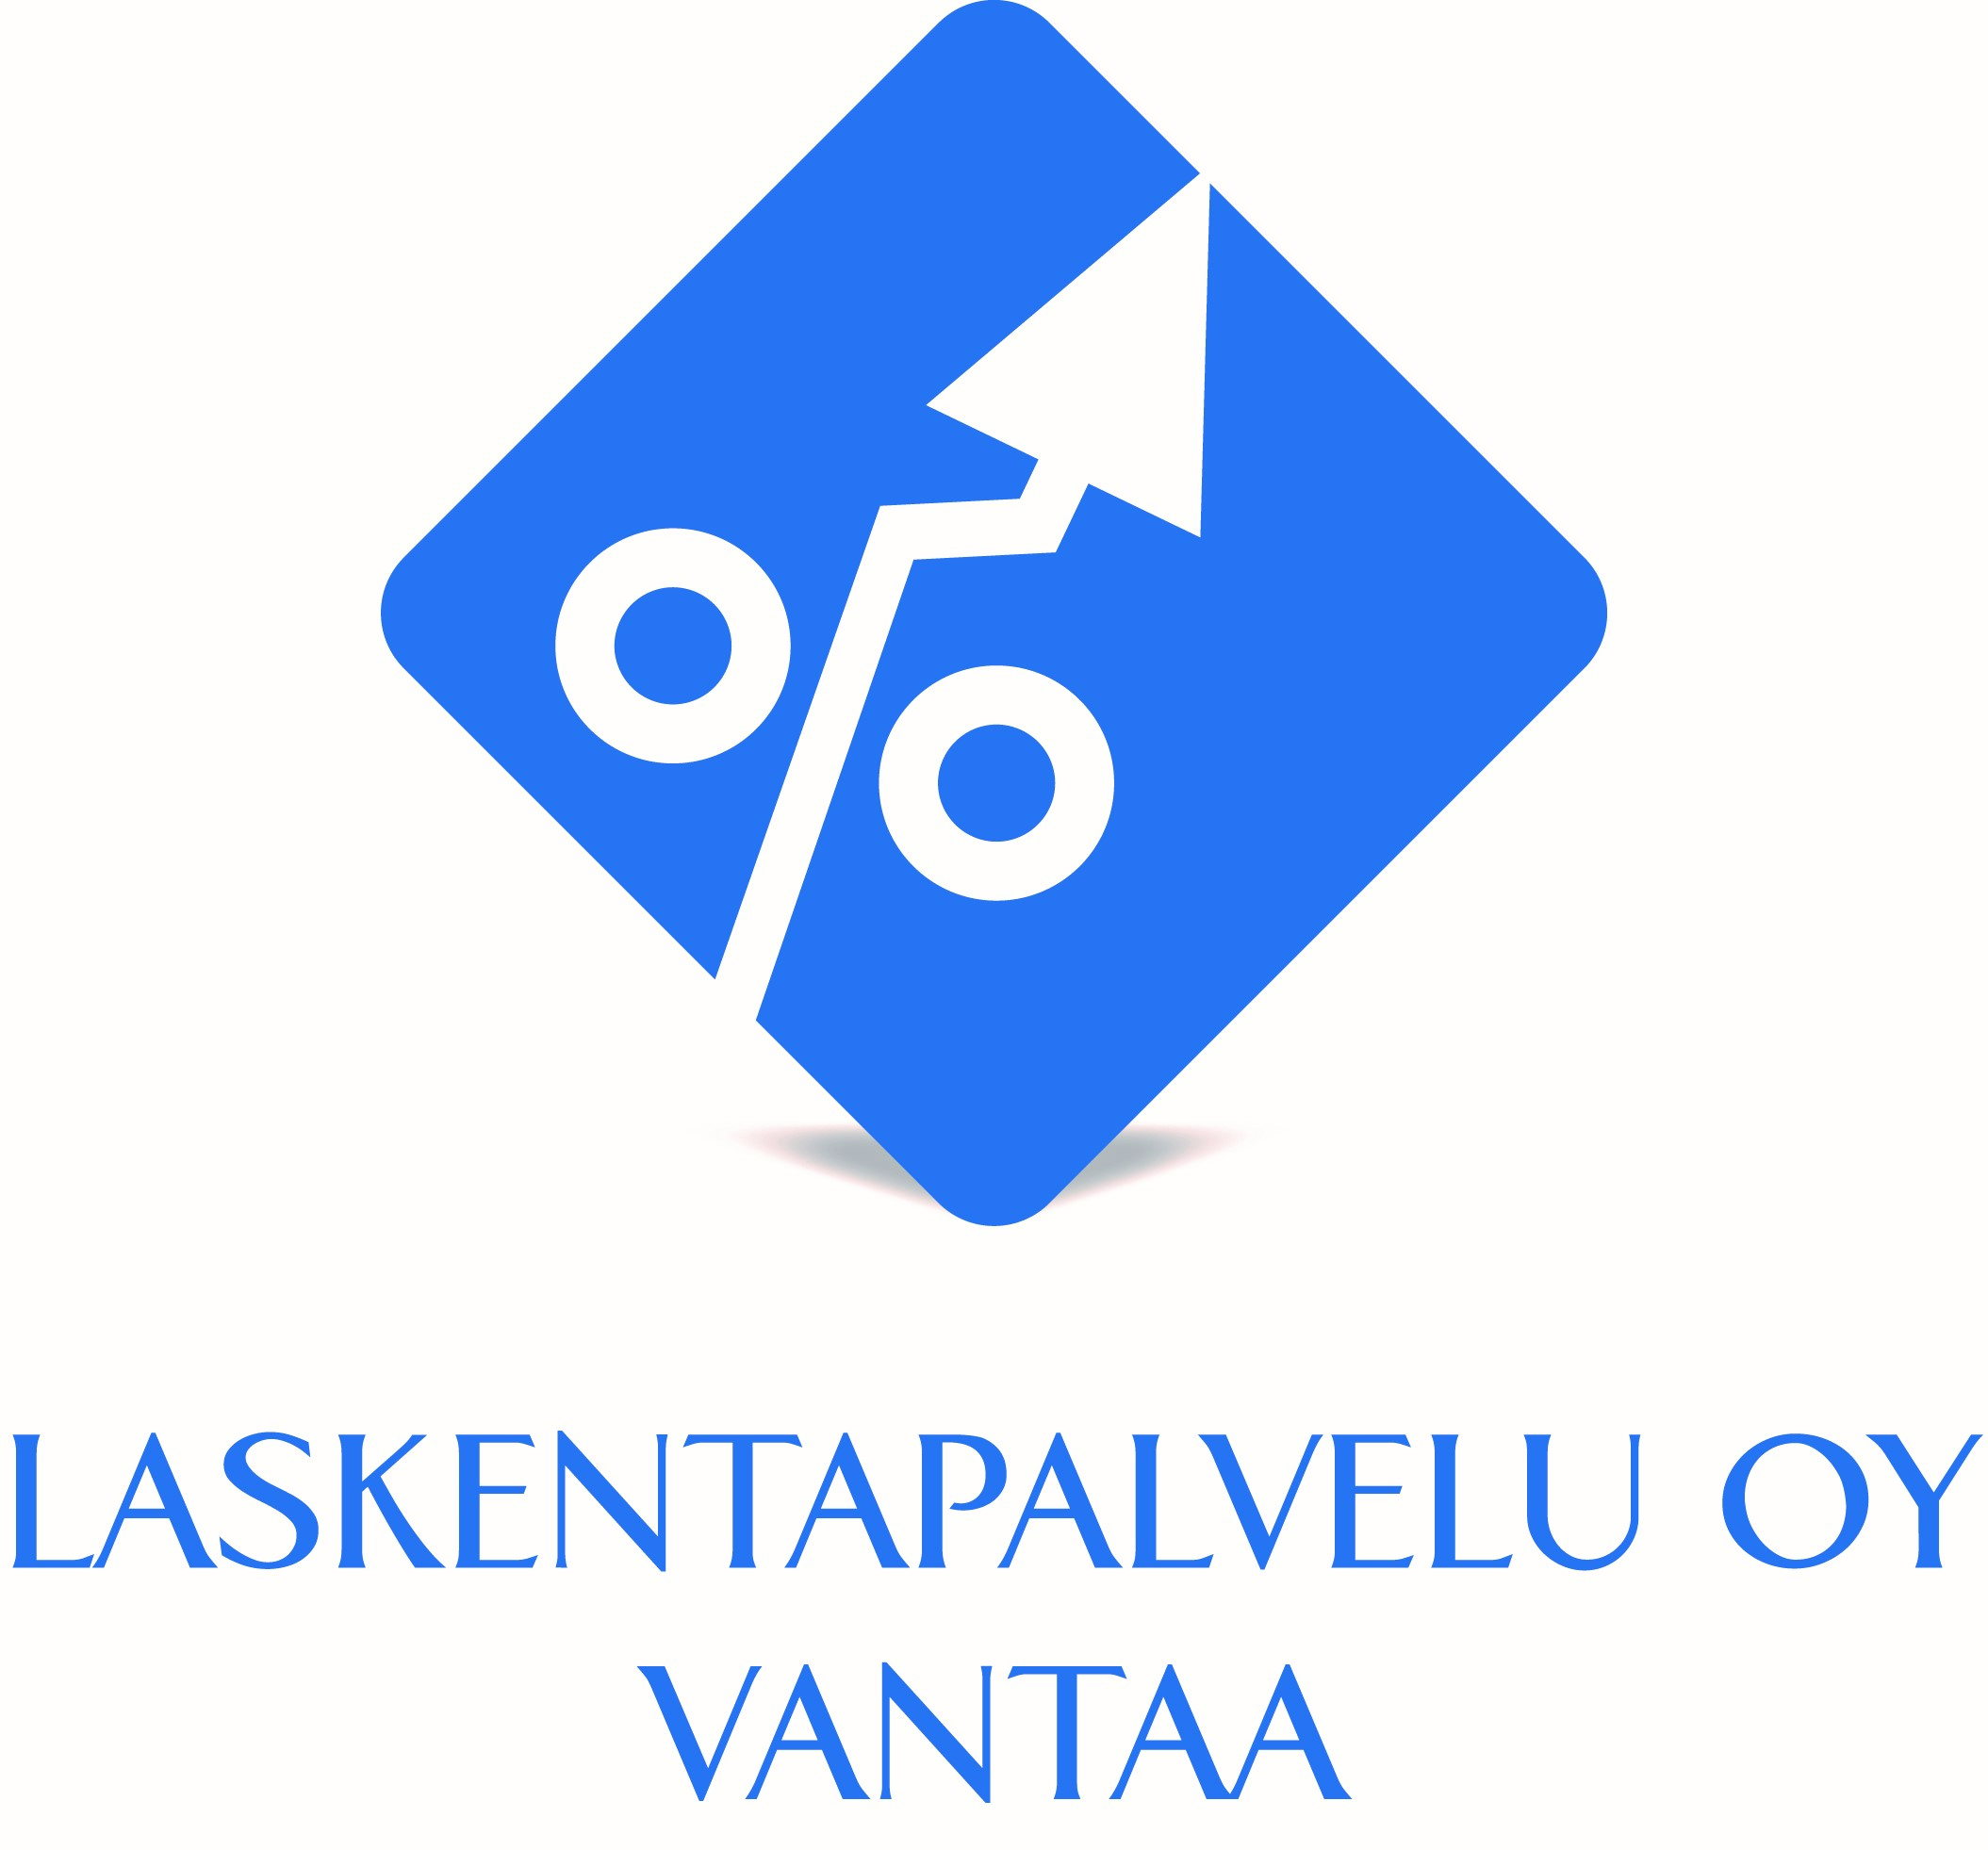 Laskentapalvelu Oy Vantaa